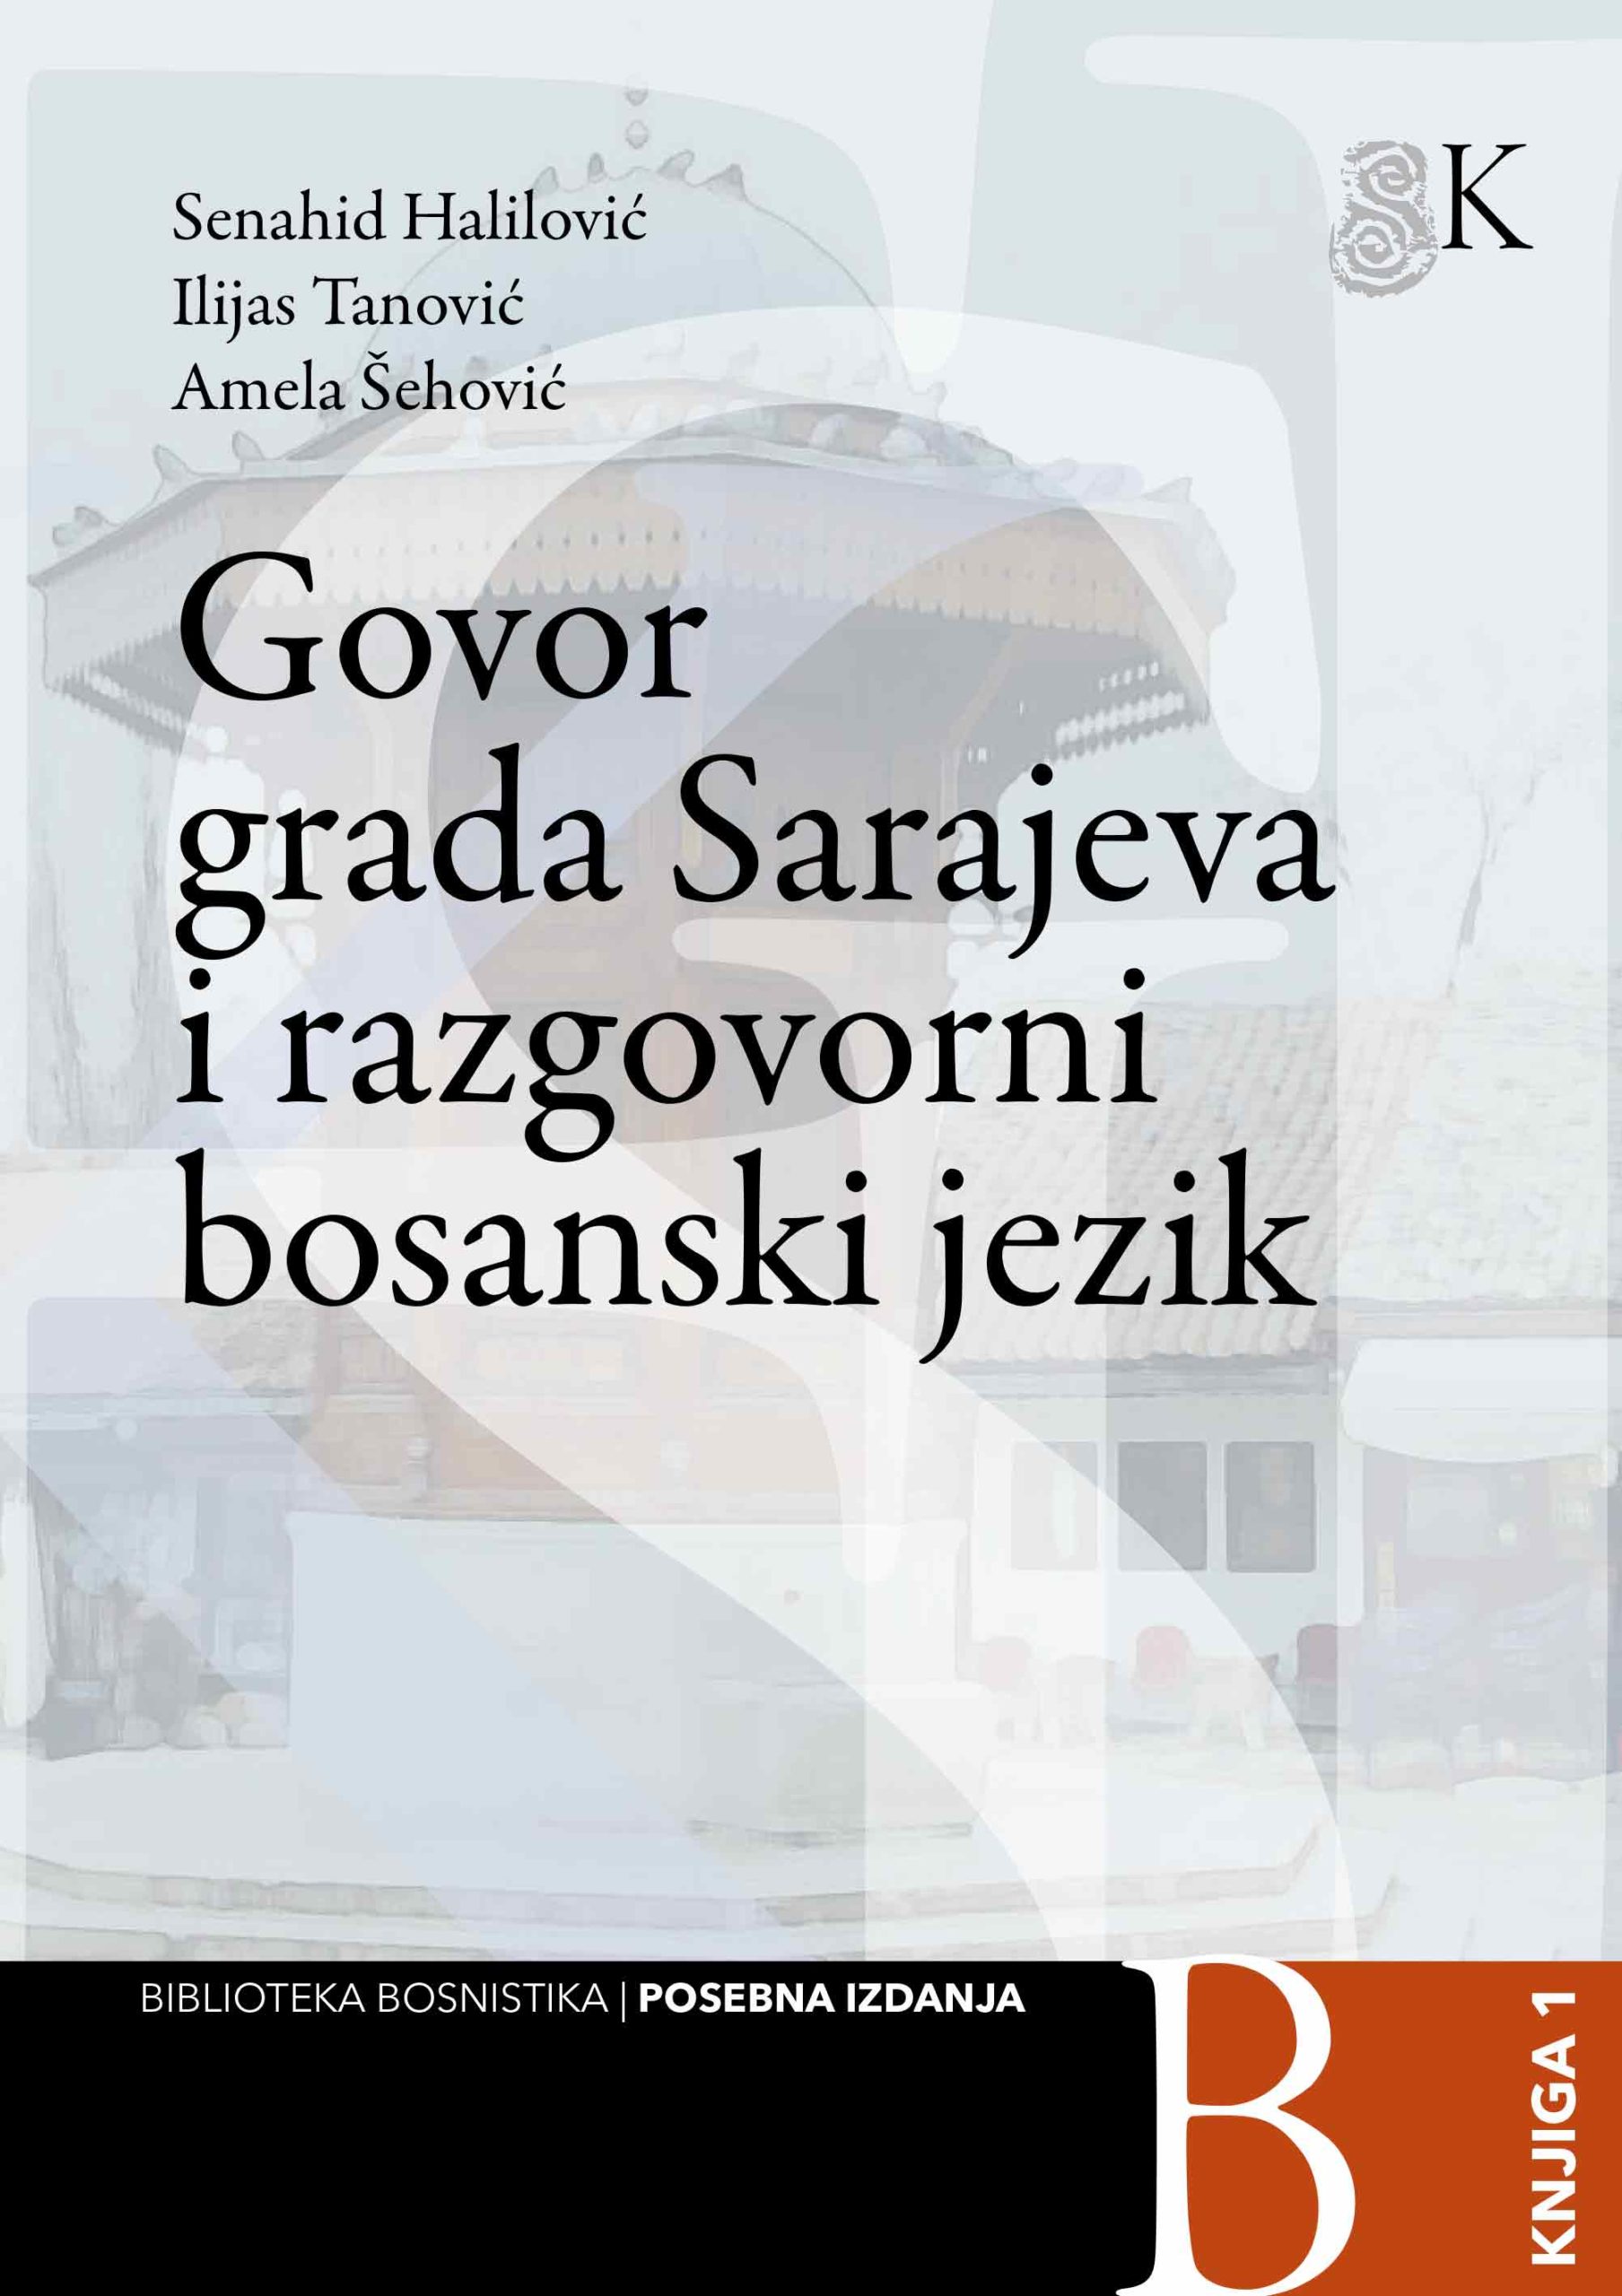 Govor grada Sarajeva i razgovorni bosanski jezik / Senahid Halilović, Ilijas Tanović, Amela Šehović